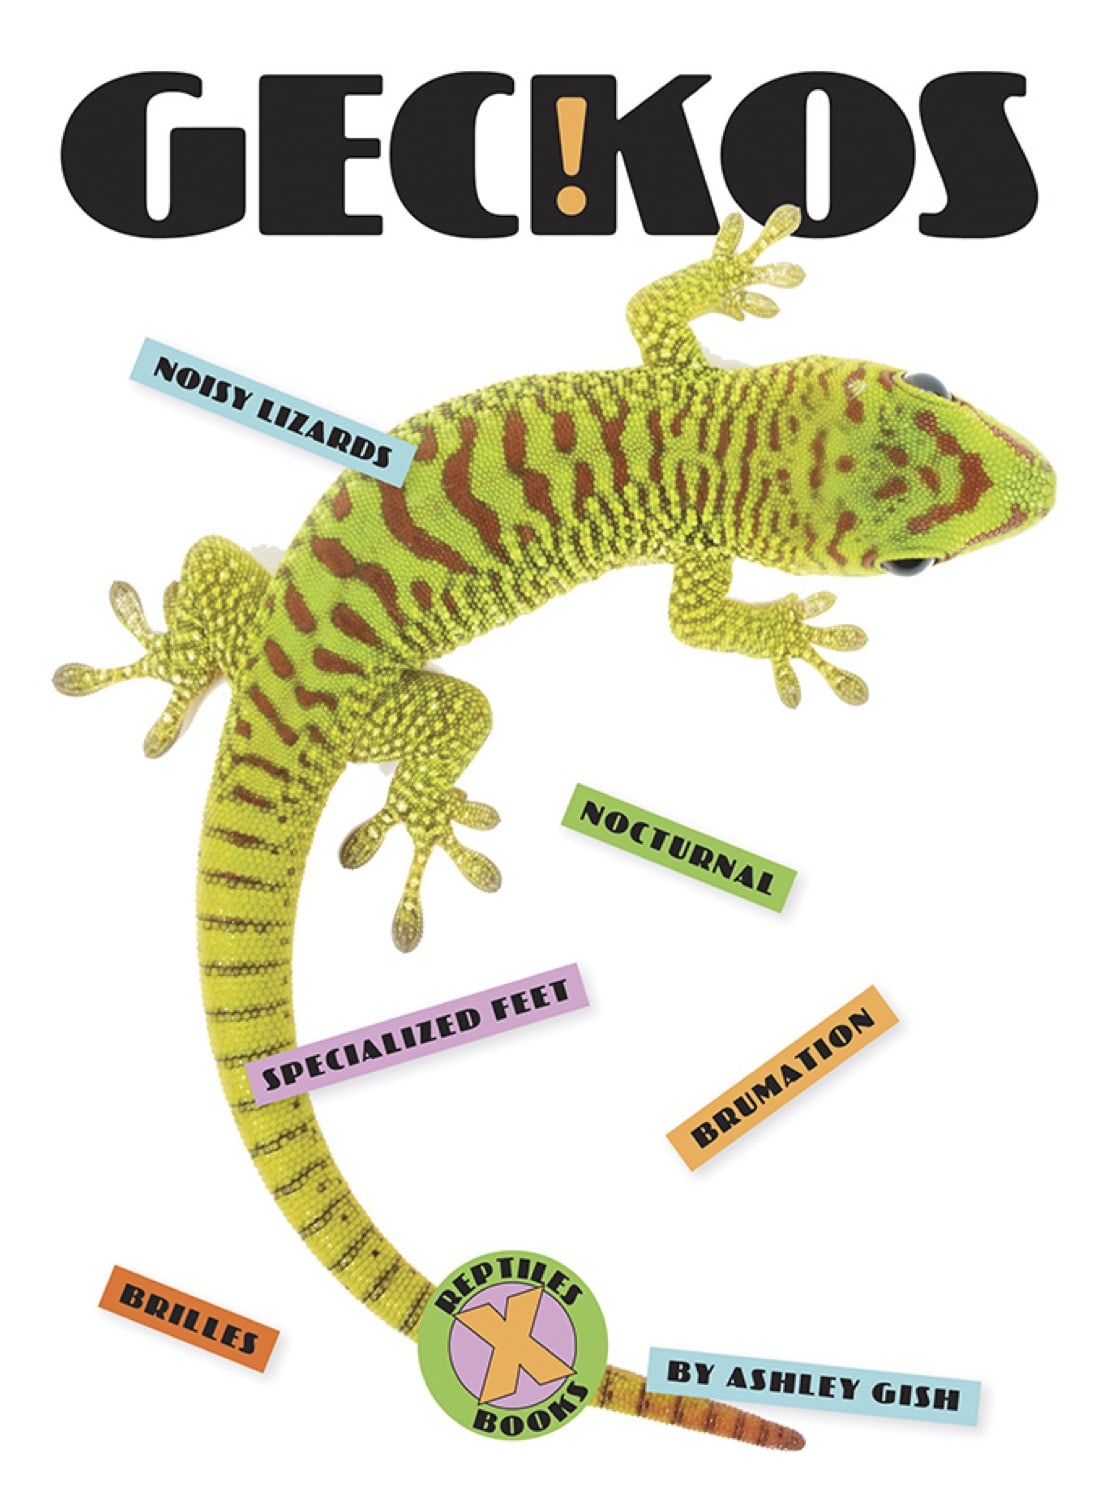 X-Books: Reptiles: Geckos